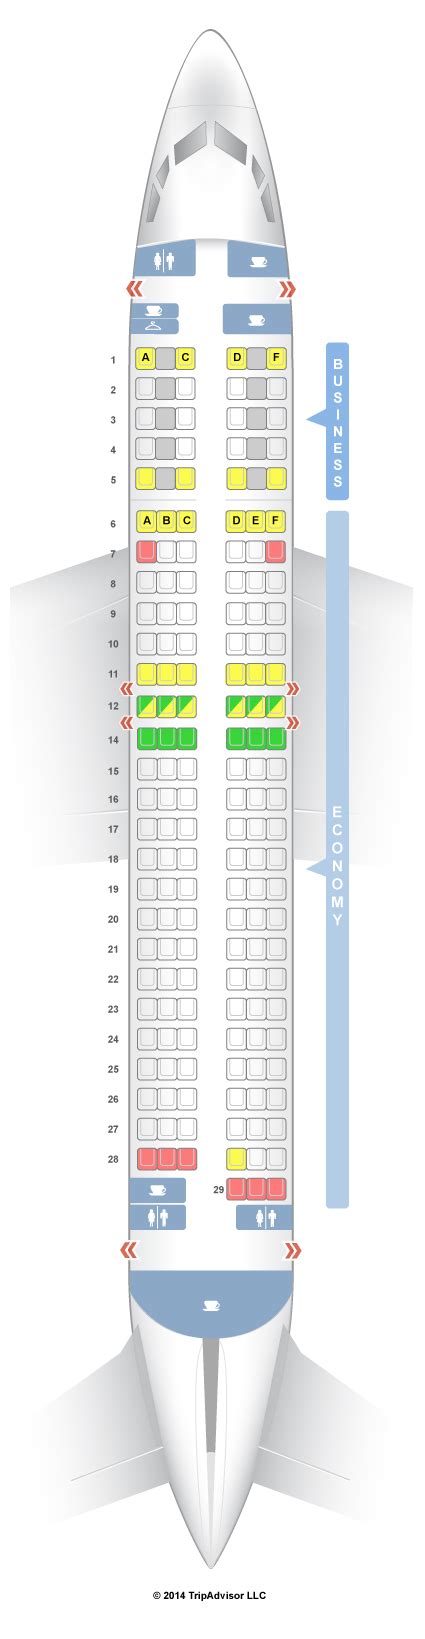 Seatguru Seat Map Turkish Airlines Boeing V